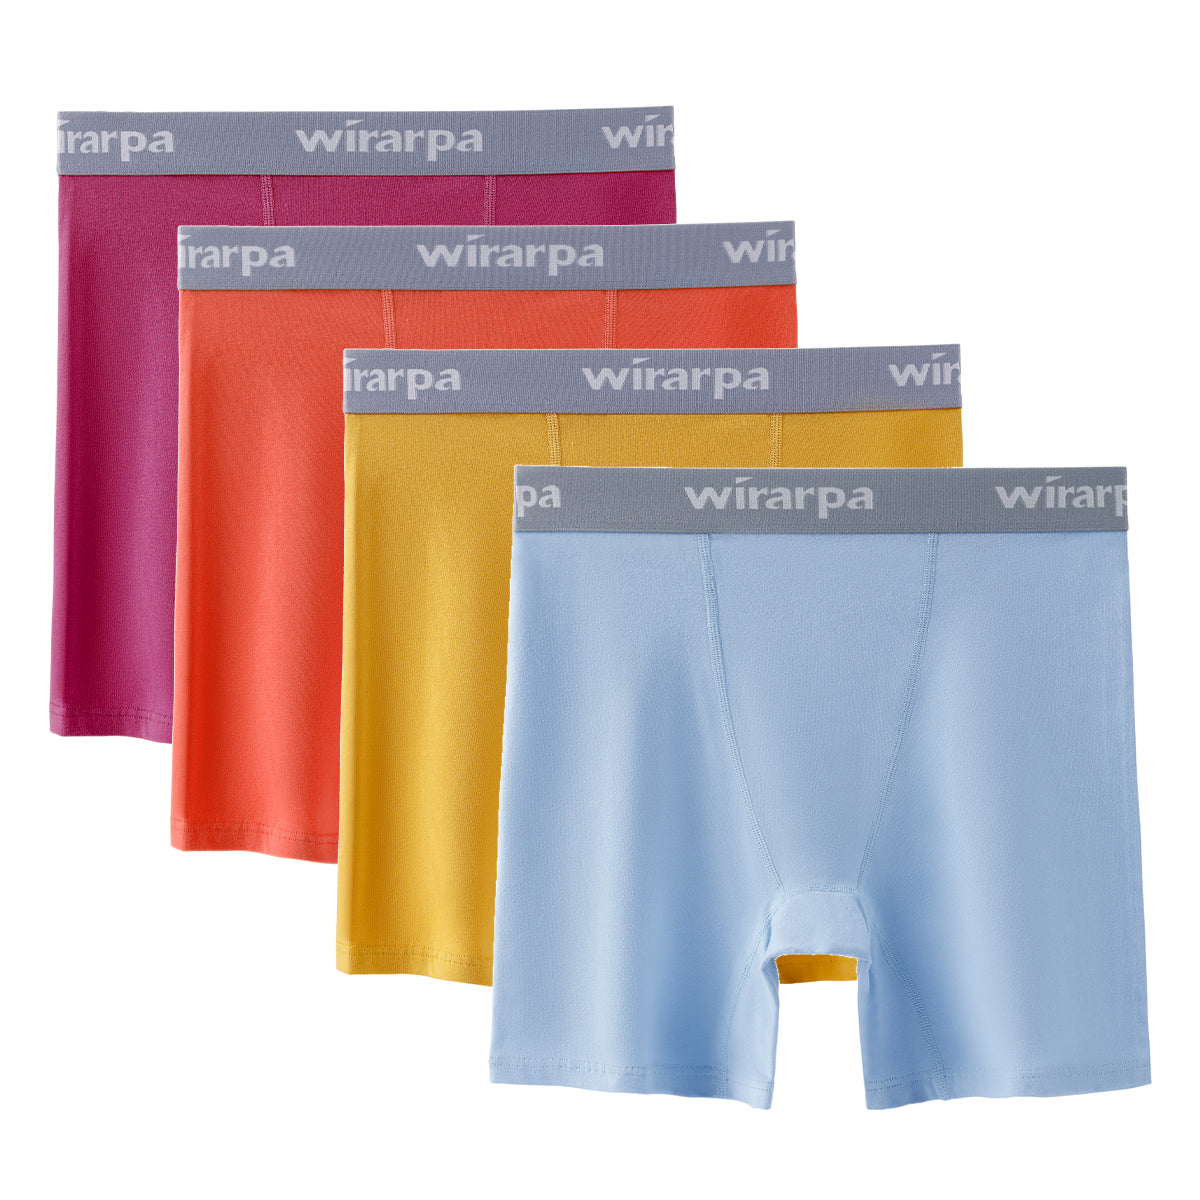 wirarpa Women's Boxer Briefs Cotton Underwear Anti Chafing Boy